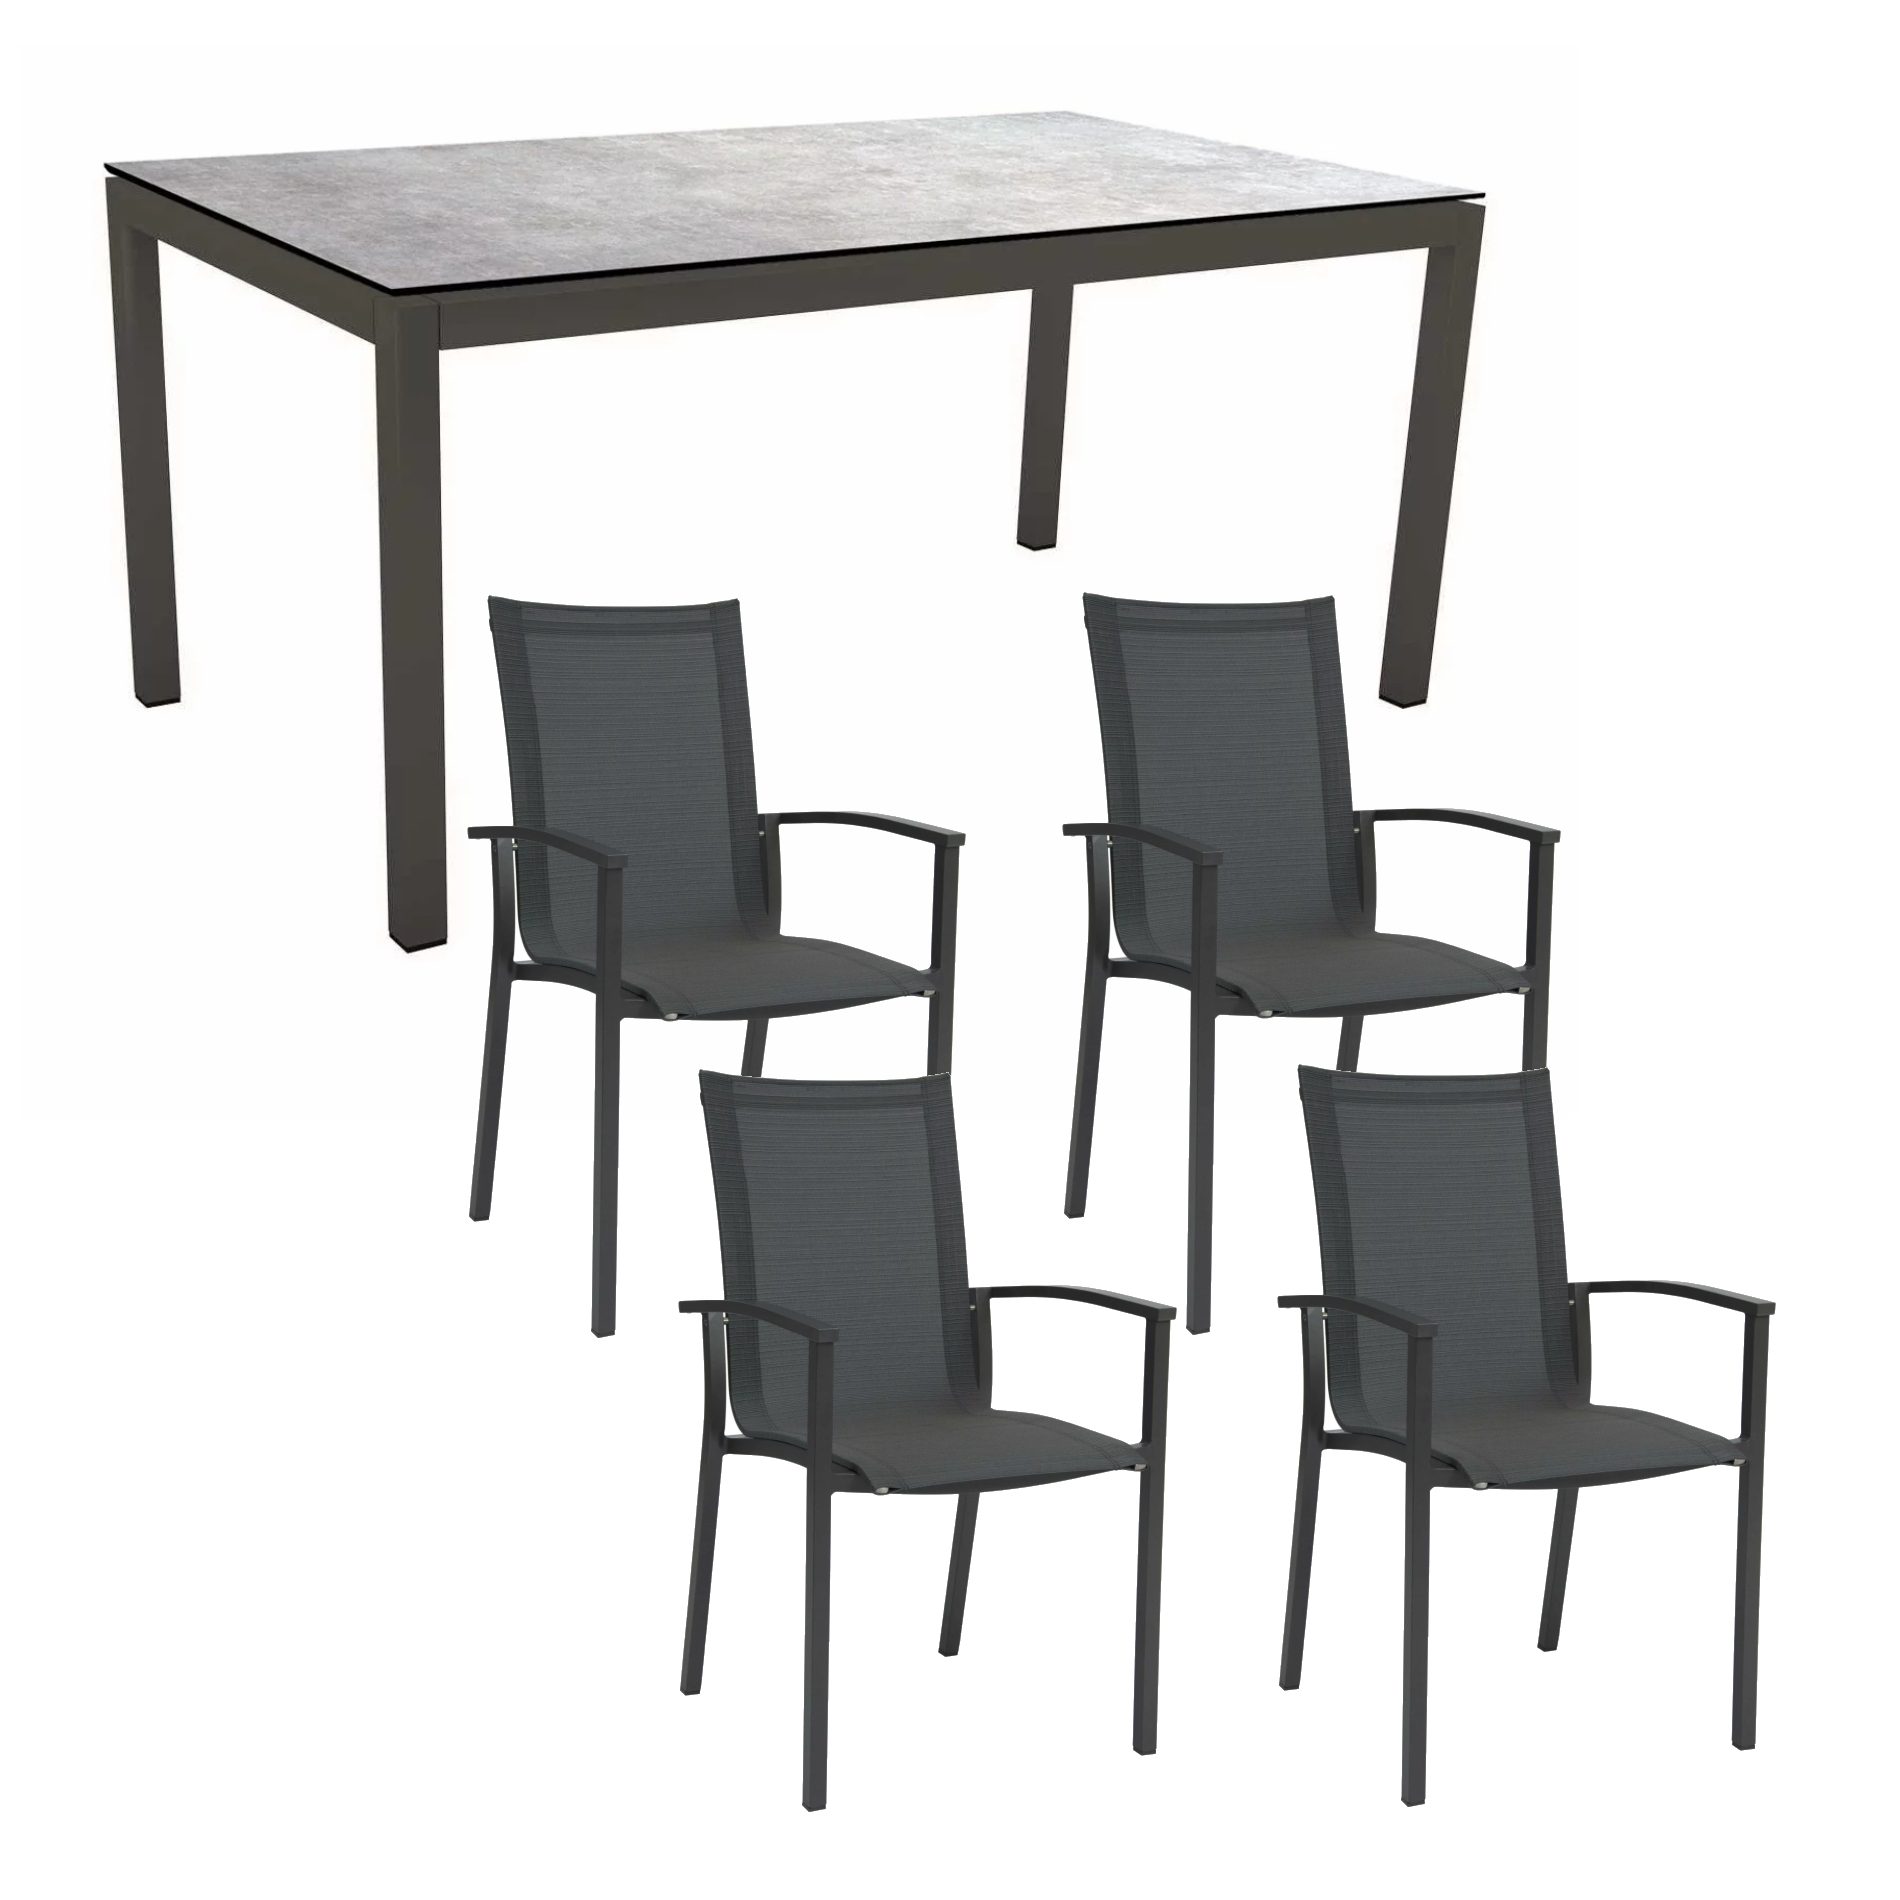 Stern Gartenmöbel-Set "Evoee", Gestelle Aluminium anthrazit, Sitzfläche Textilgewebe karbon, Tischplatte HPL Metallic Grau